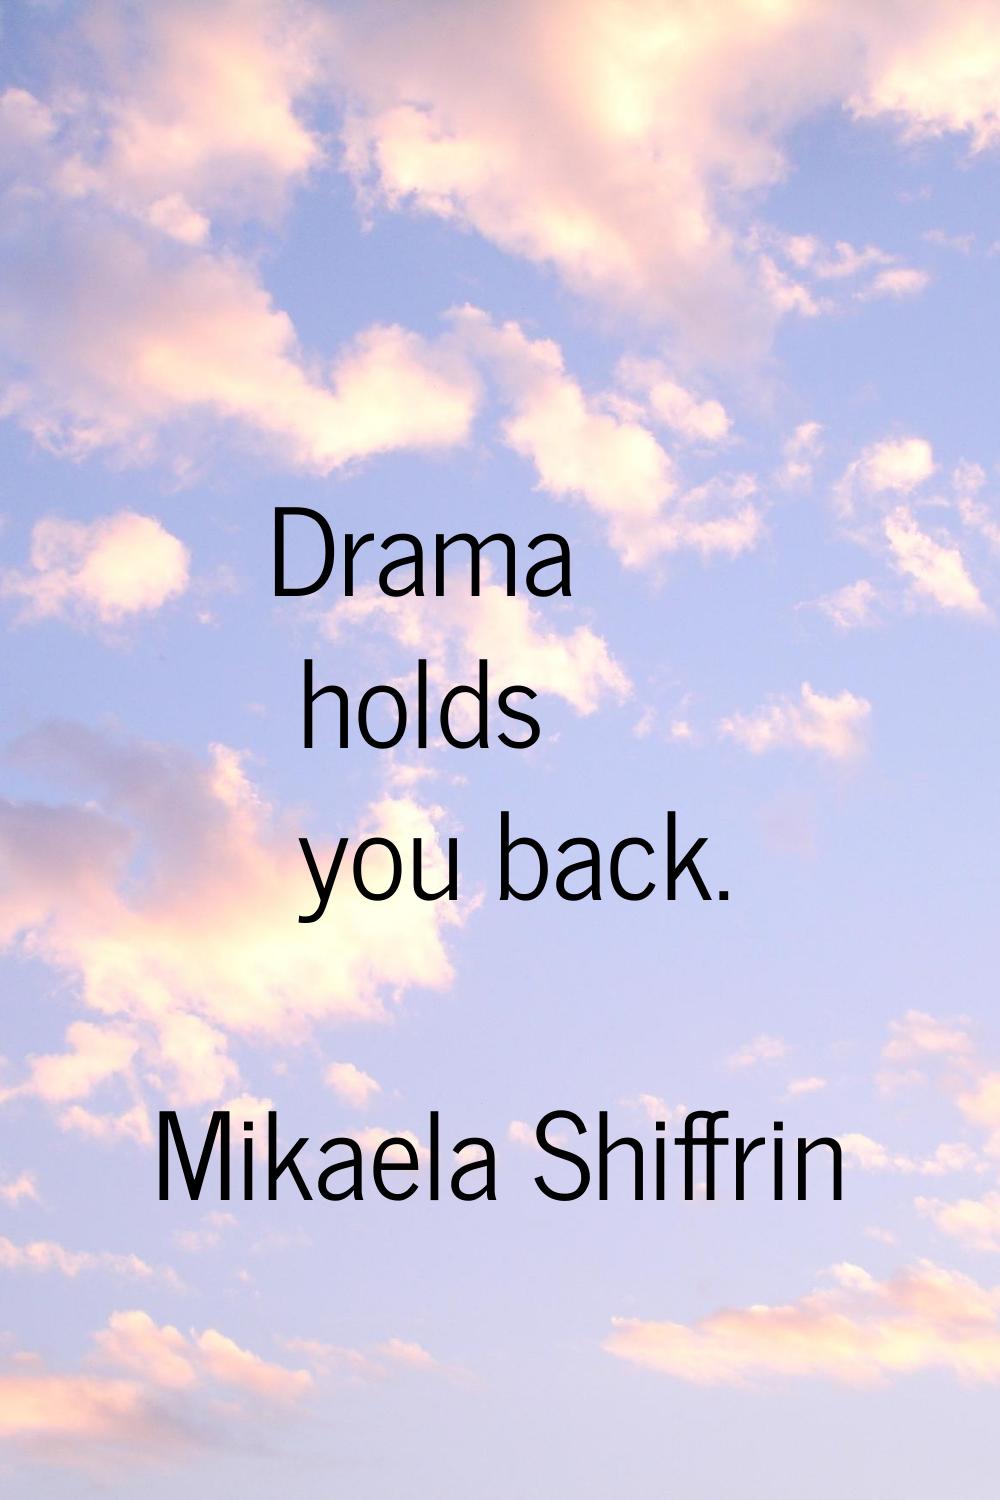 Drama holds you back.